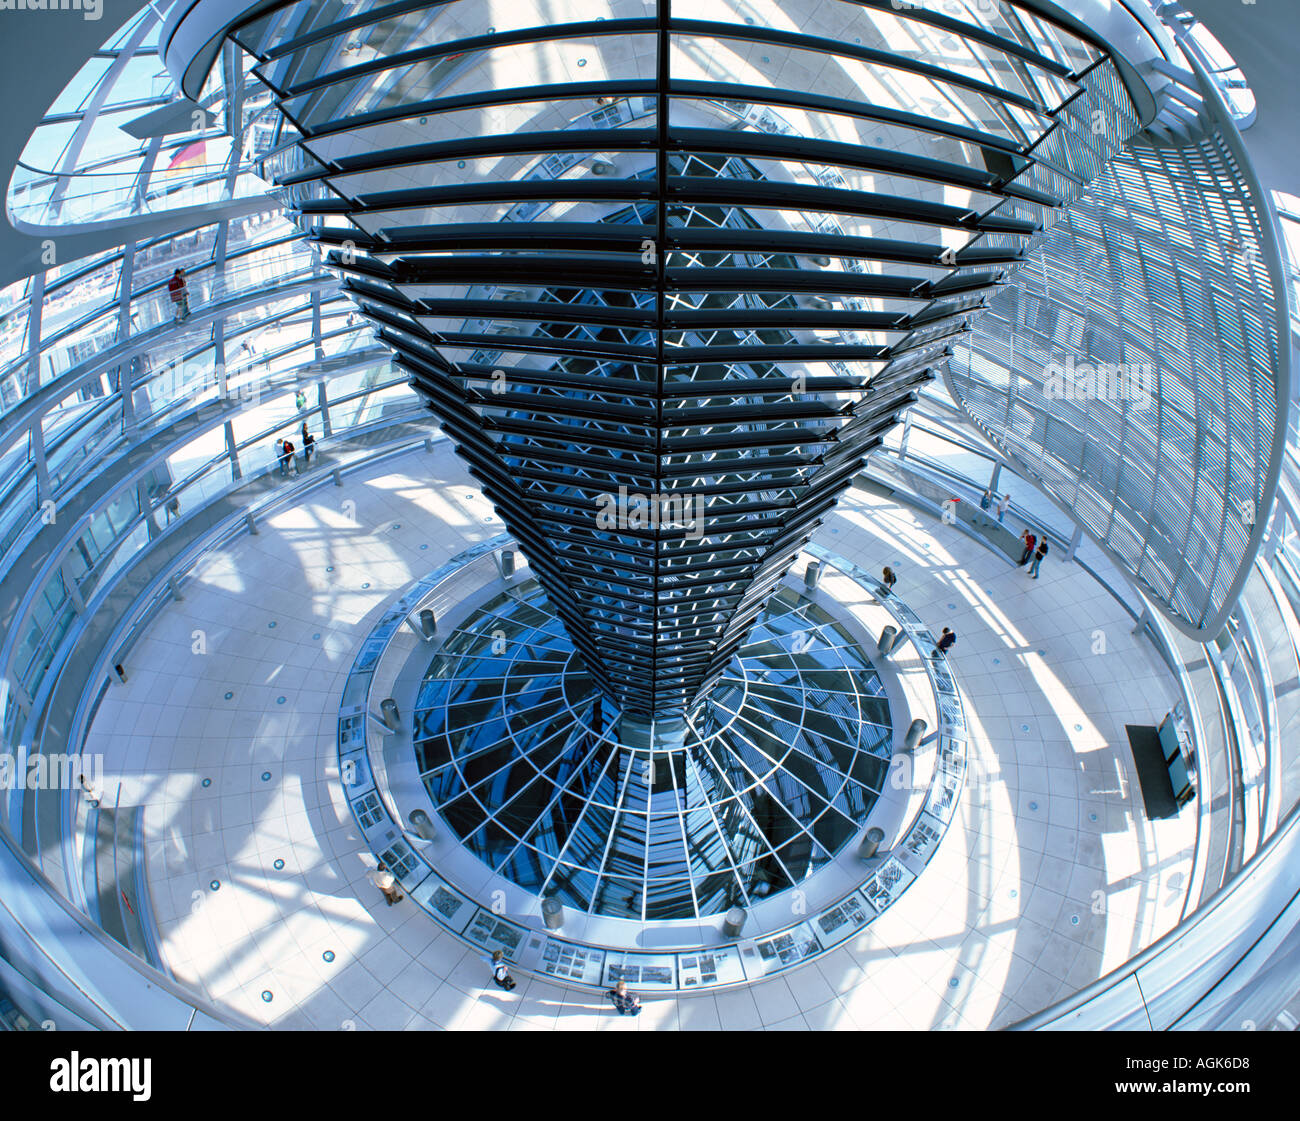 Intérieur de la coupole du Reichstag Berlin Allemagne bâtiment du parlement Banque D'Images